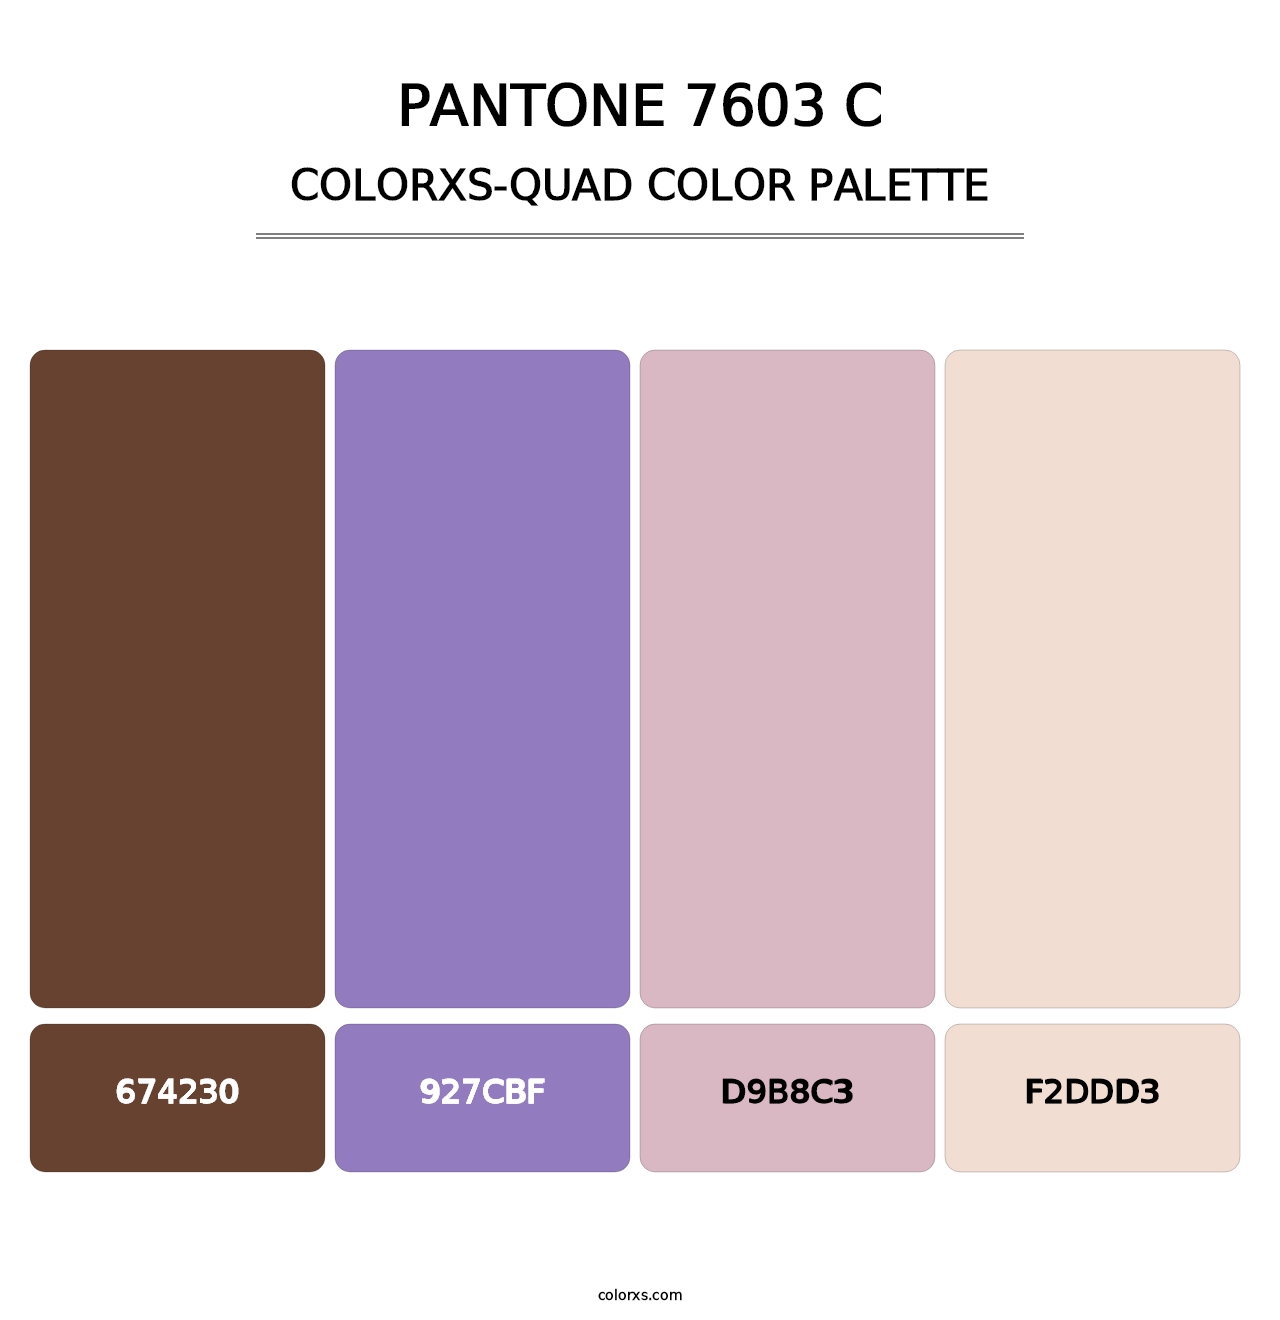 PANTONE 7603 C - Colorxs Quad Palette